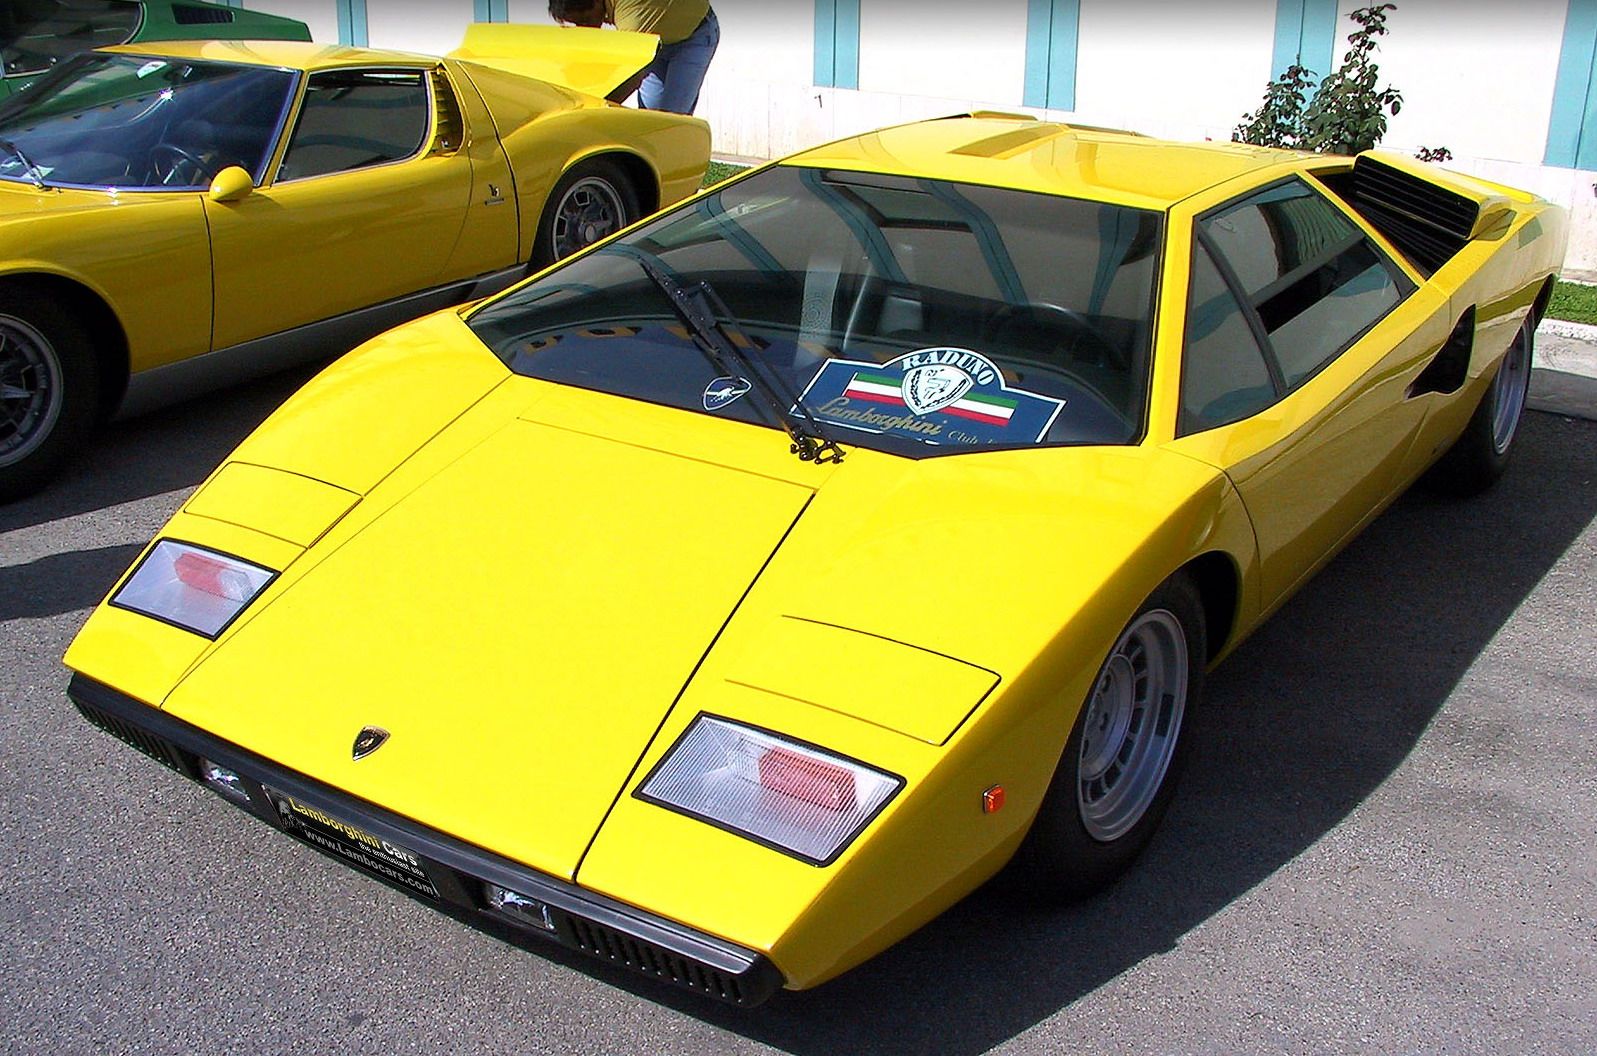 Lamborghini Countach 1974. Lamborghini Countach lp400. Countach lp400 Yellow. Lamborghini Countach LP 800 цвета. Амазинг еллоу